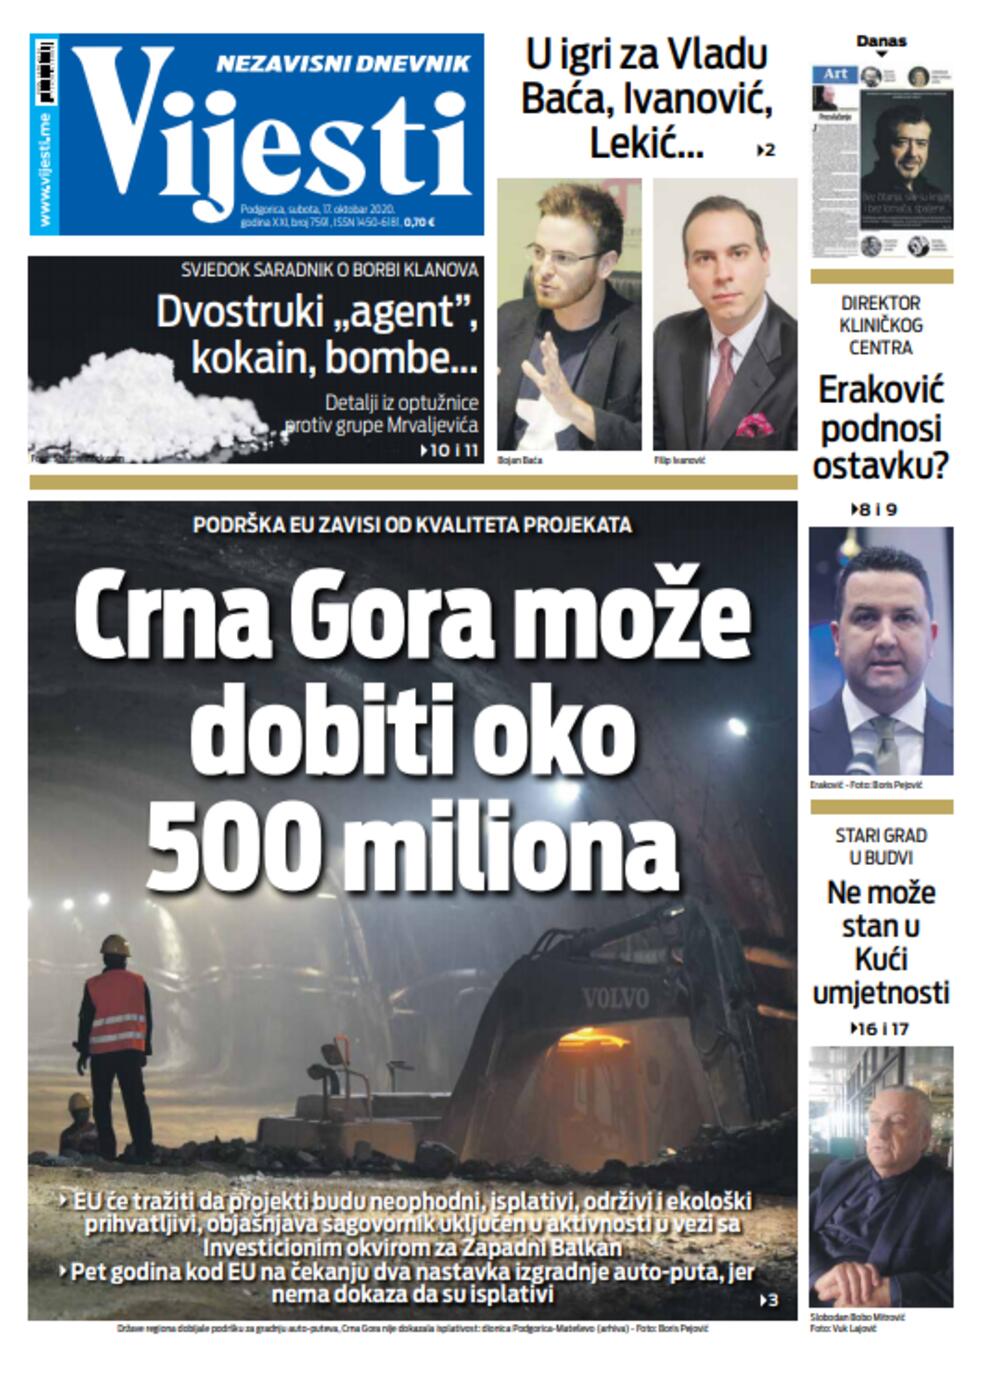 Naslovna strana "Vijesti" za 17. oktobar, Foto: Vijesti